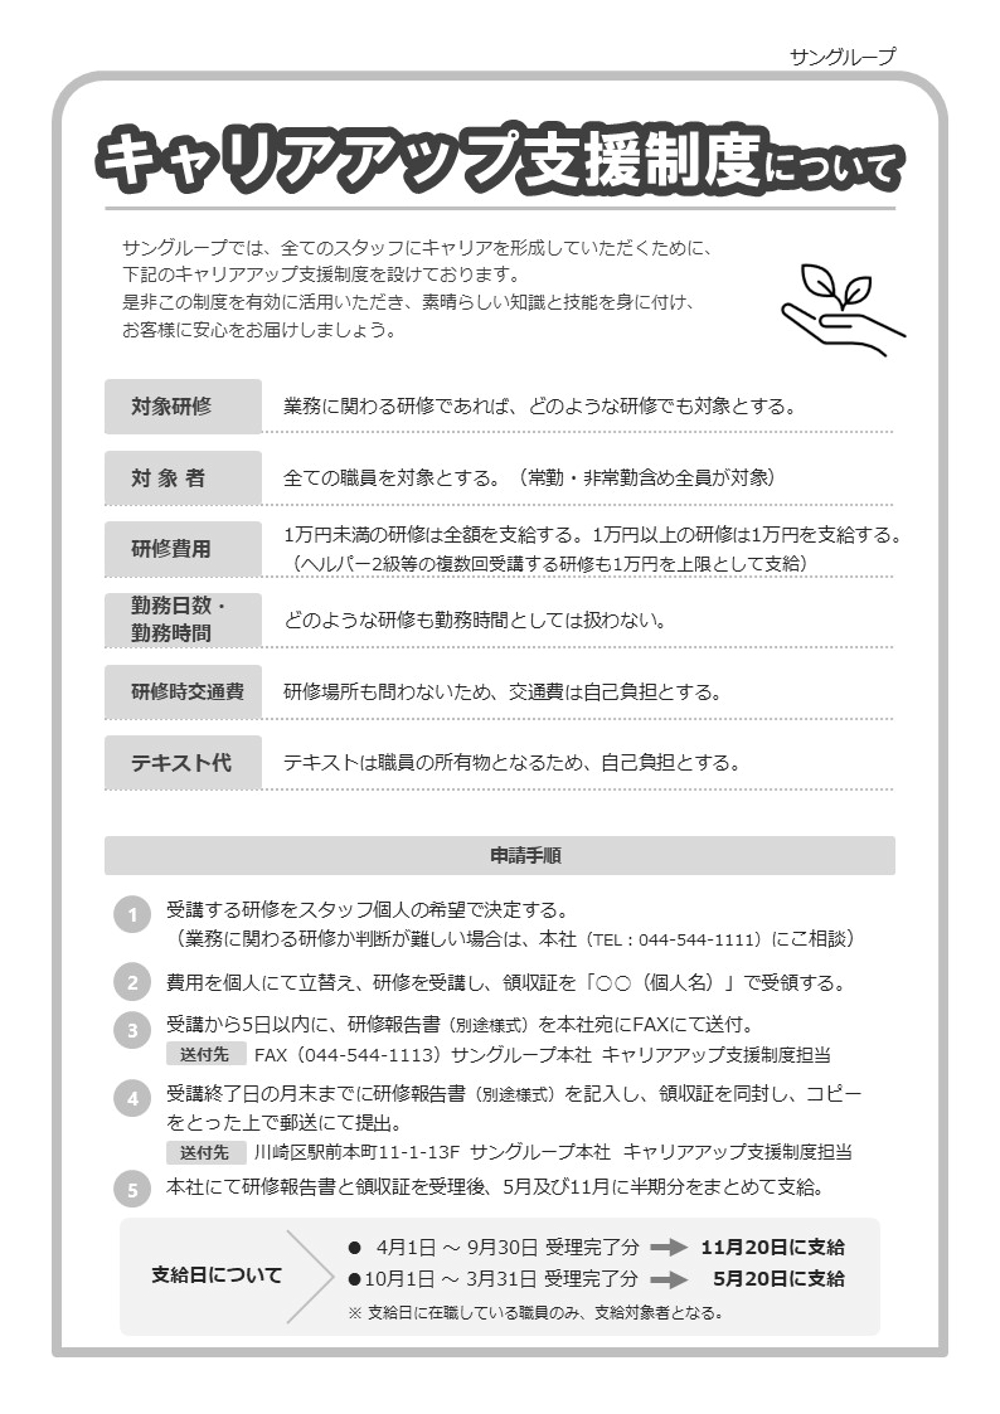 株式会社サン様_研修報告書p1_chibayou0607.JPG